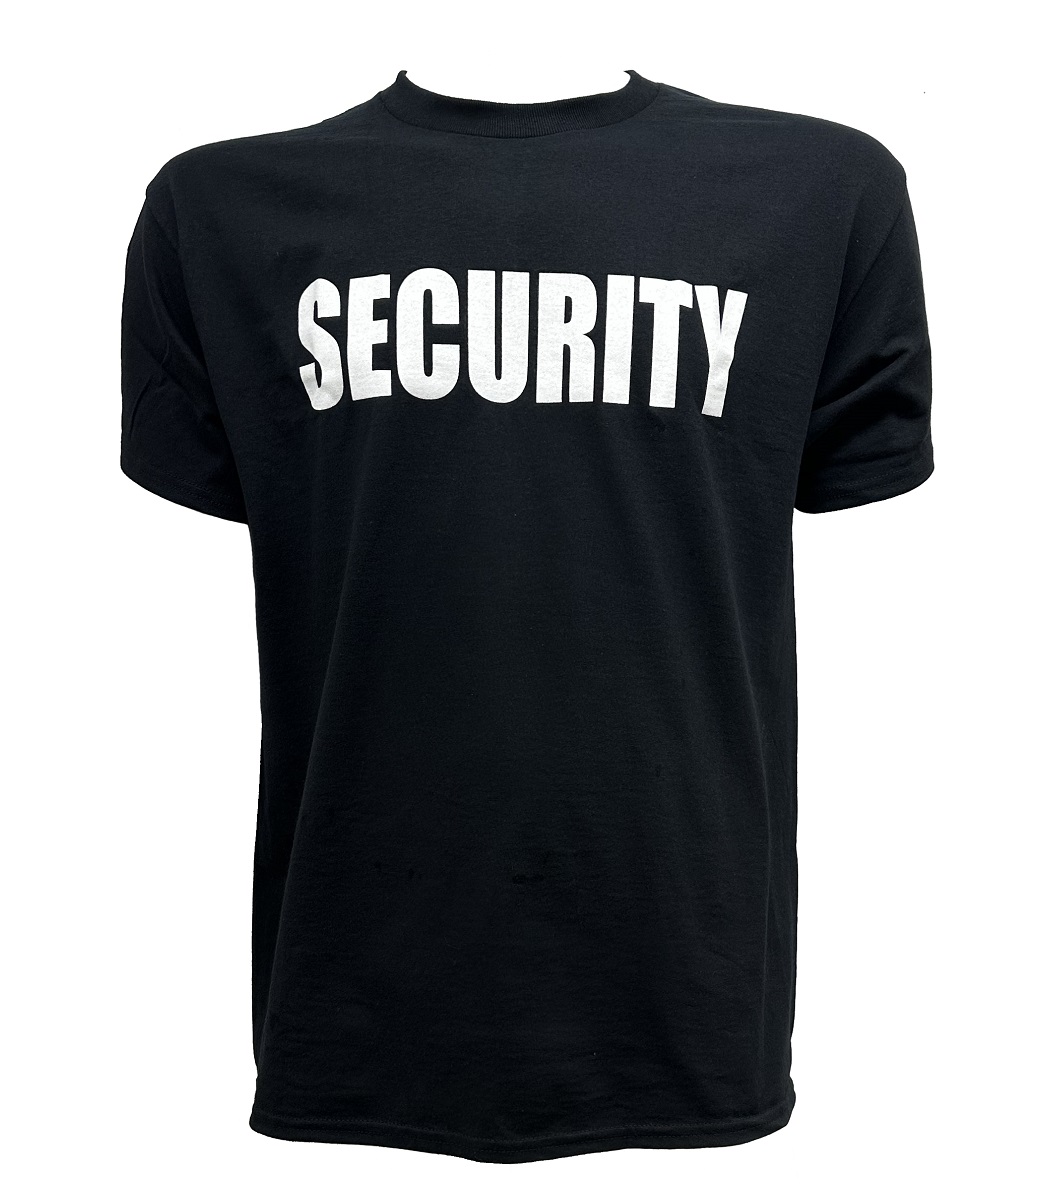 SECURITY t-shirt